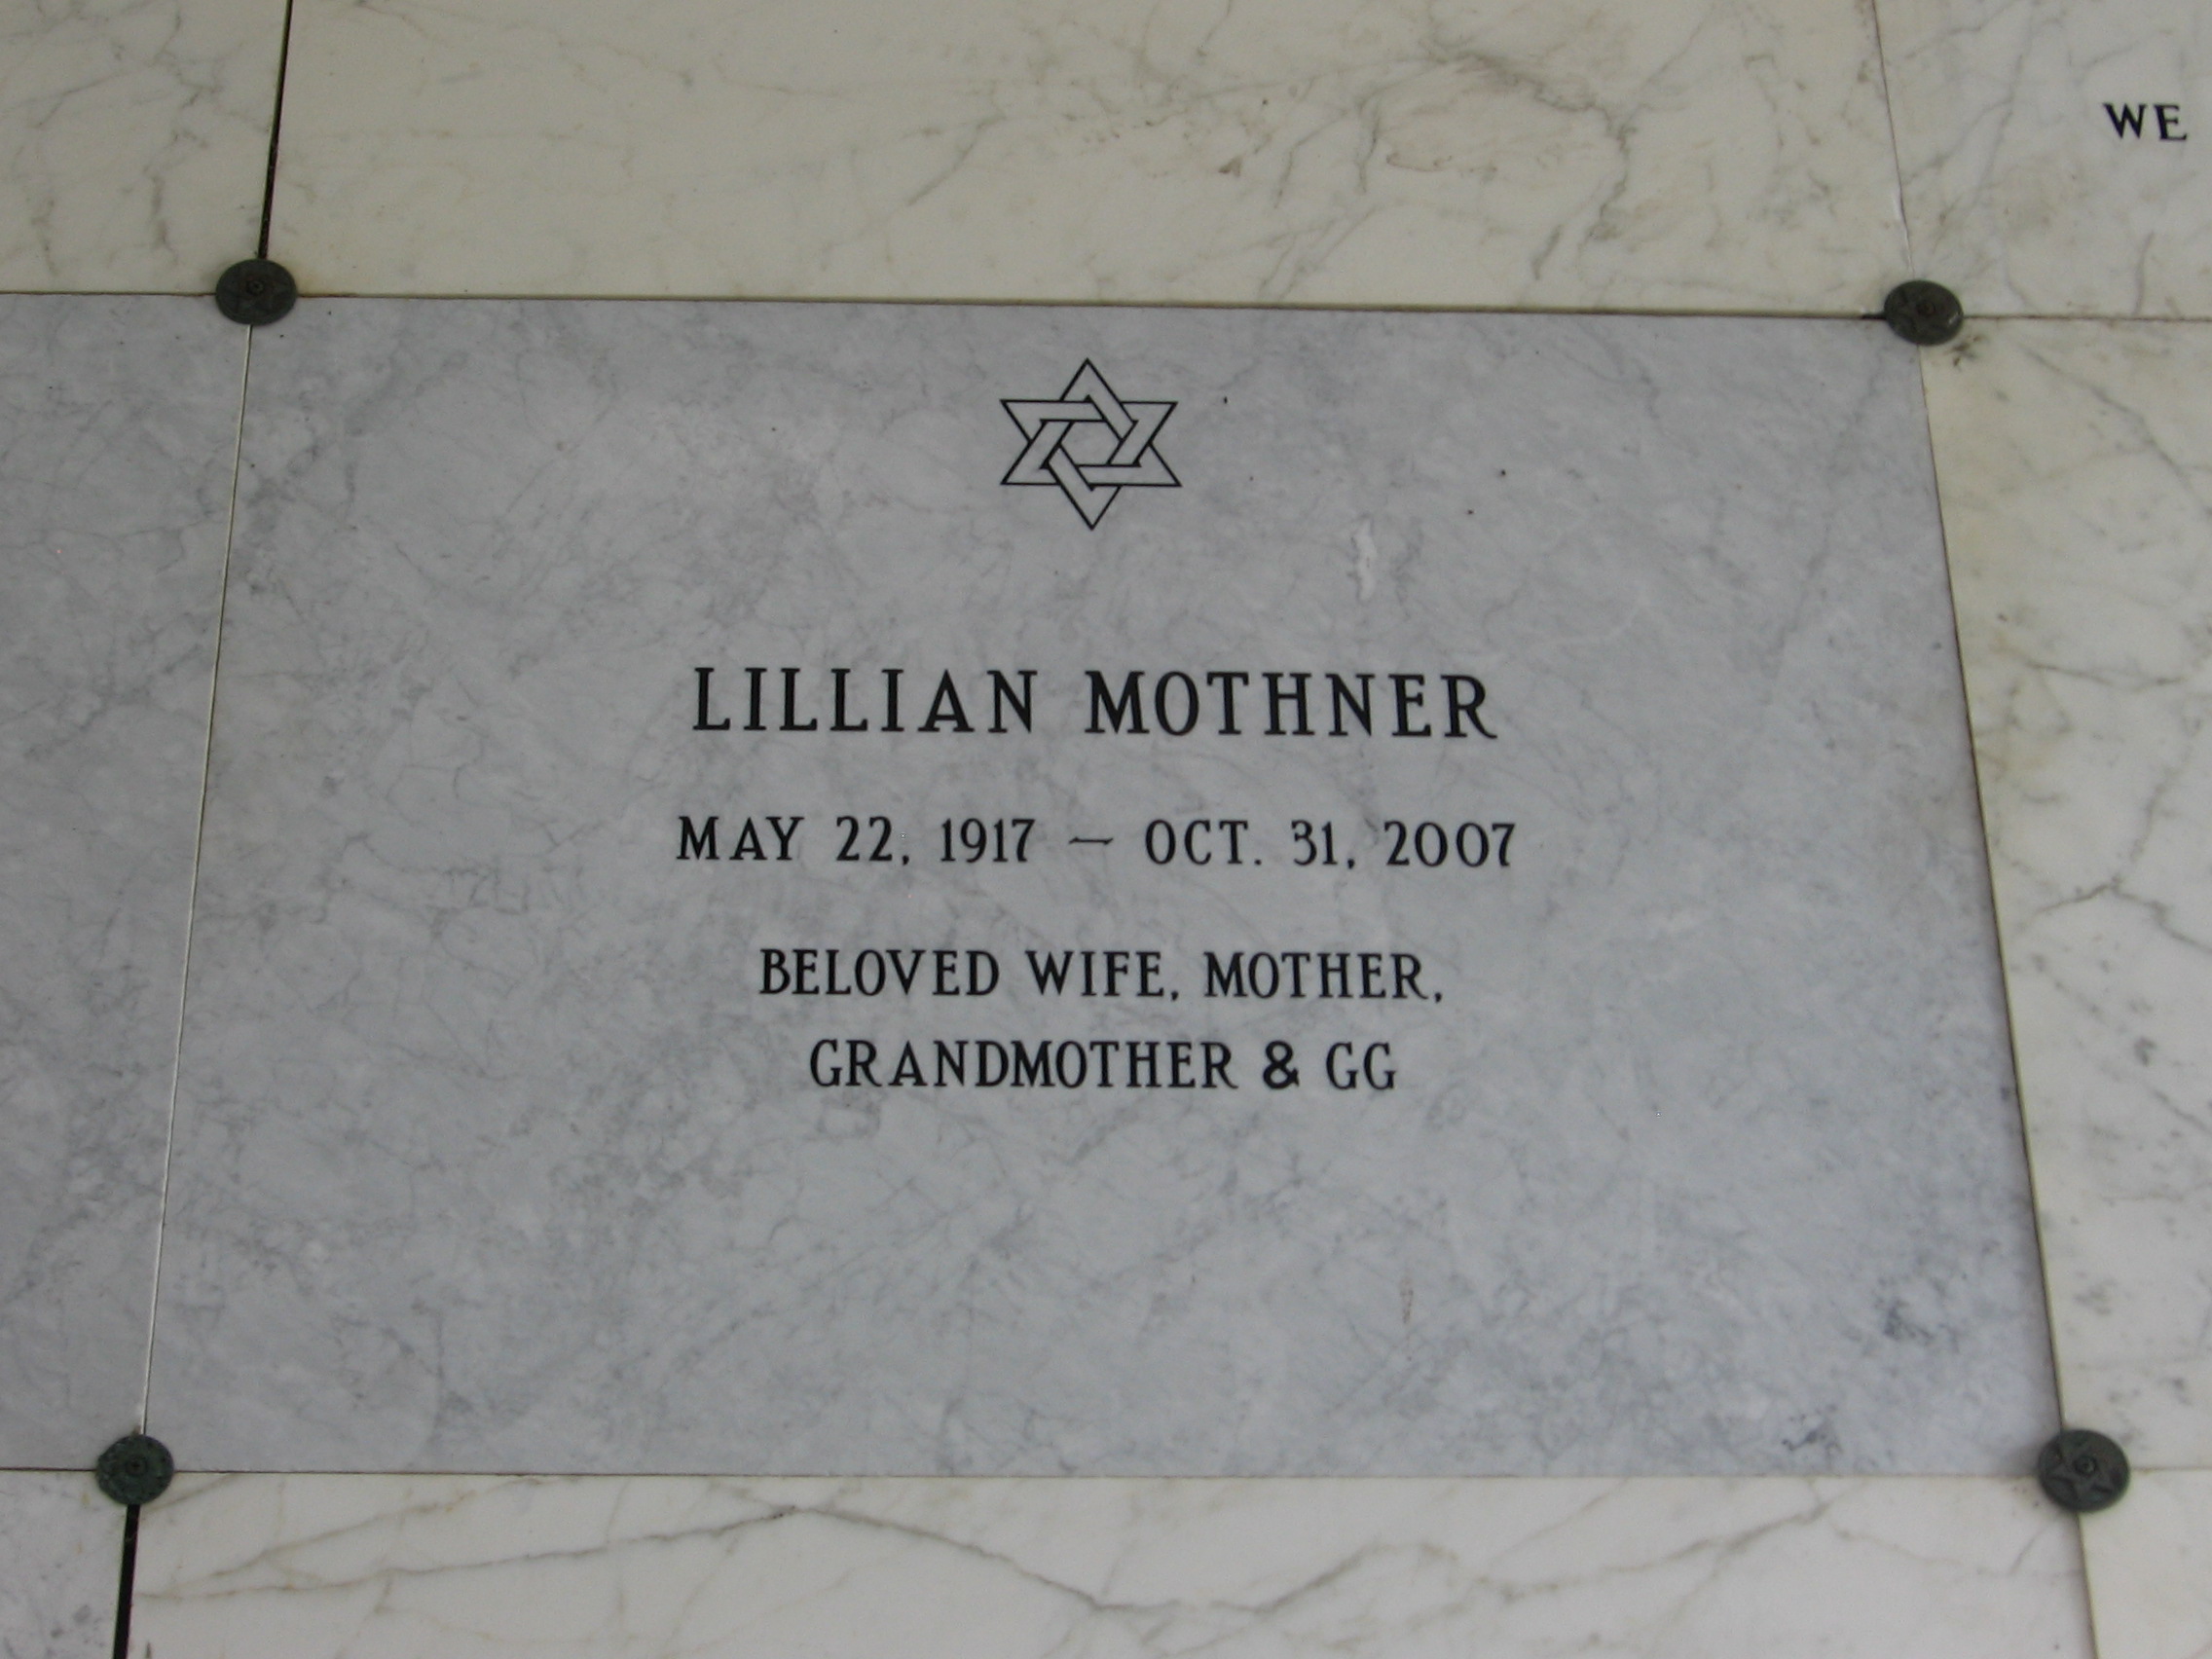 Lillian Mothner